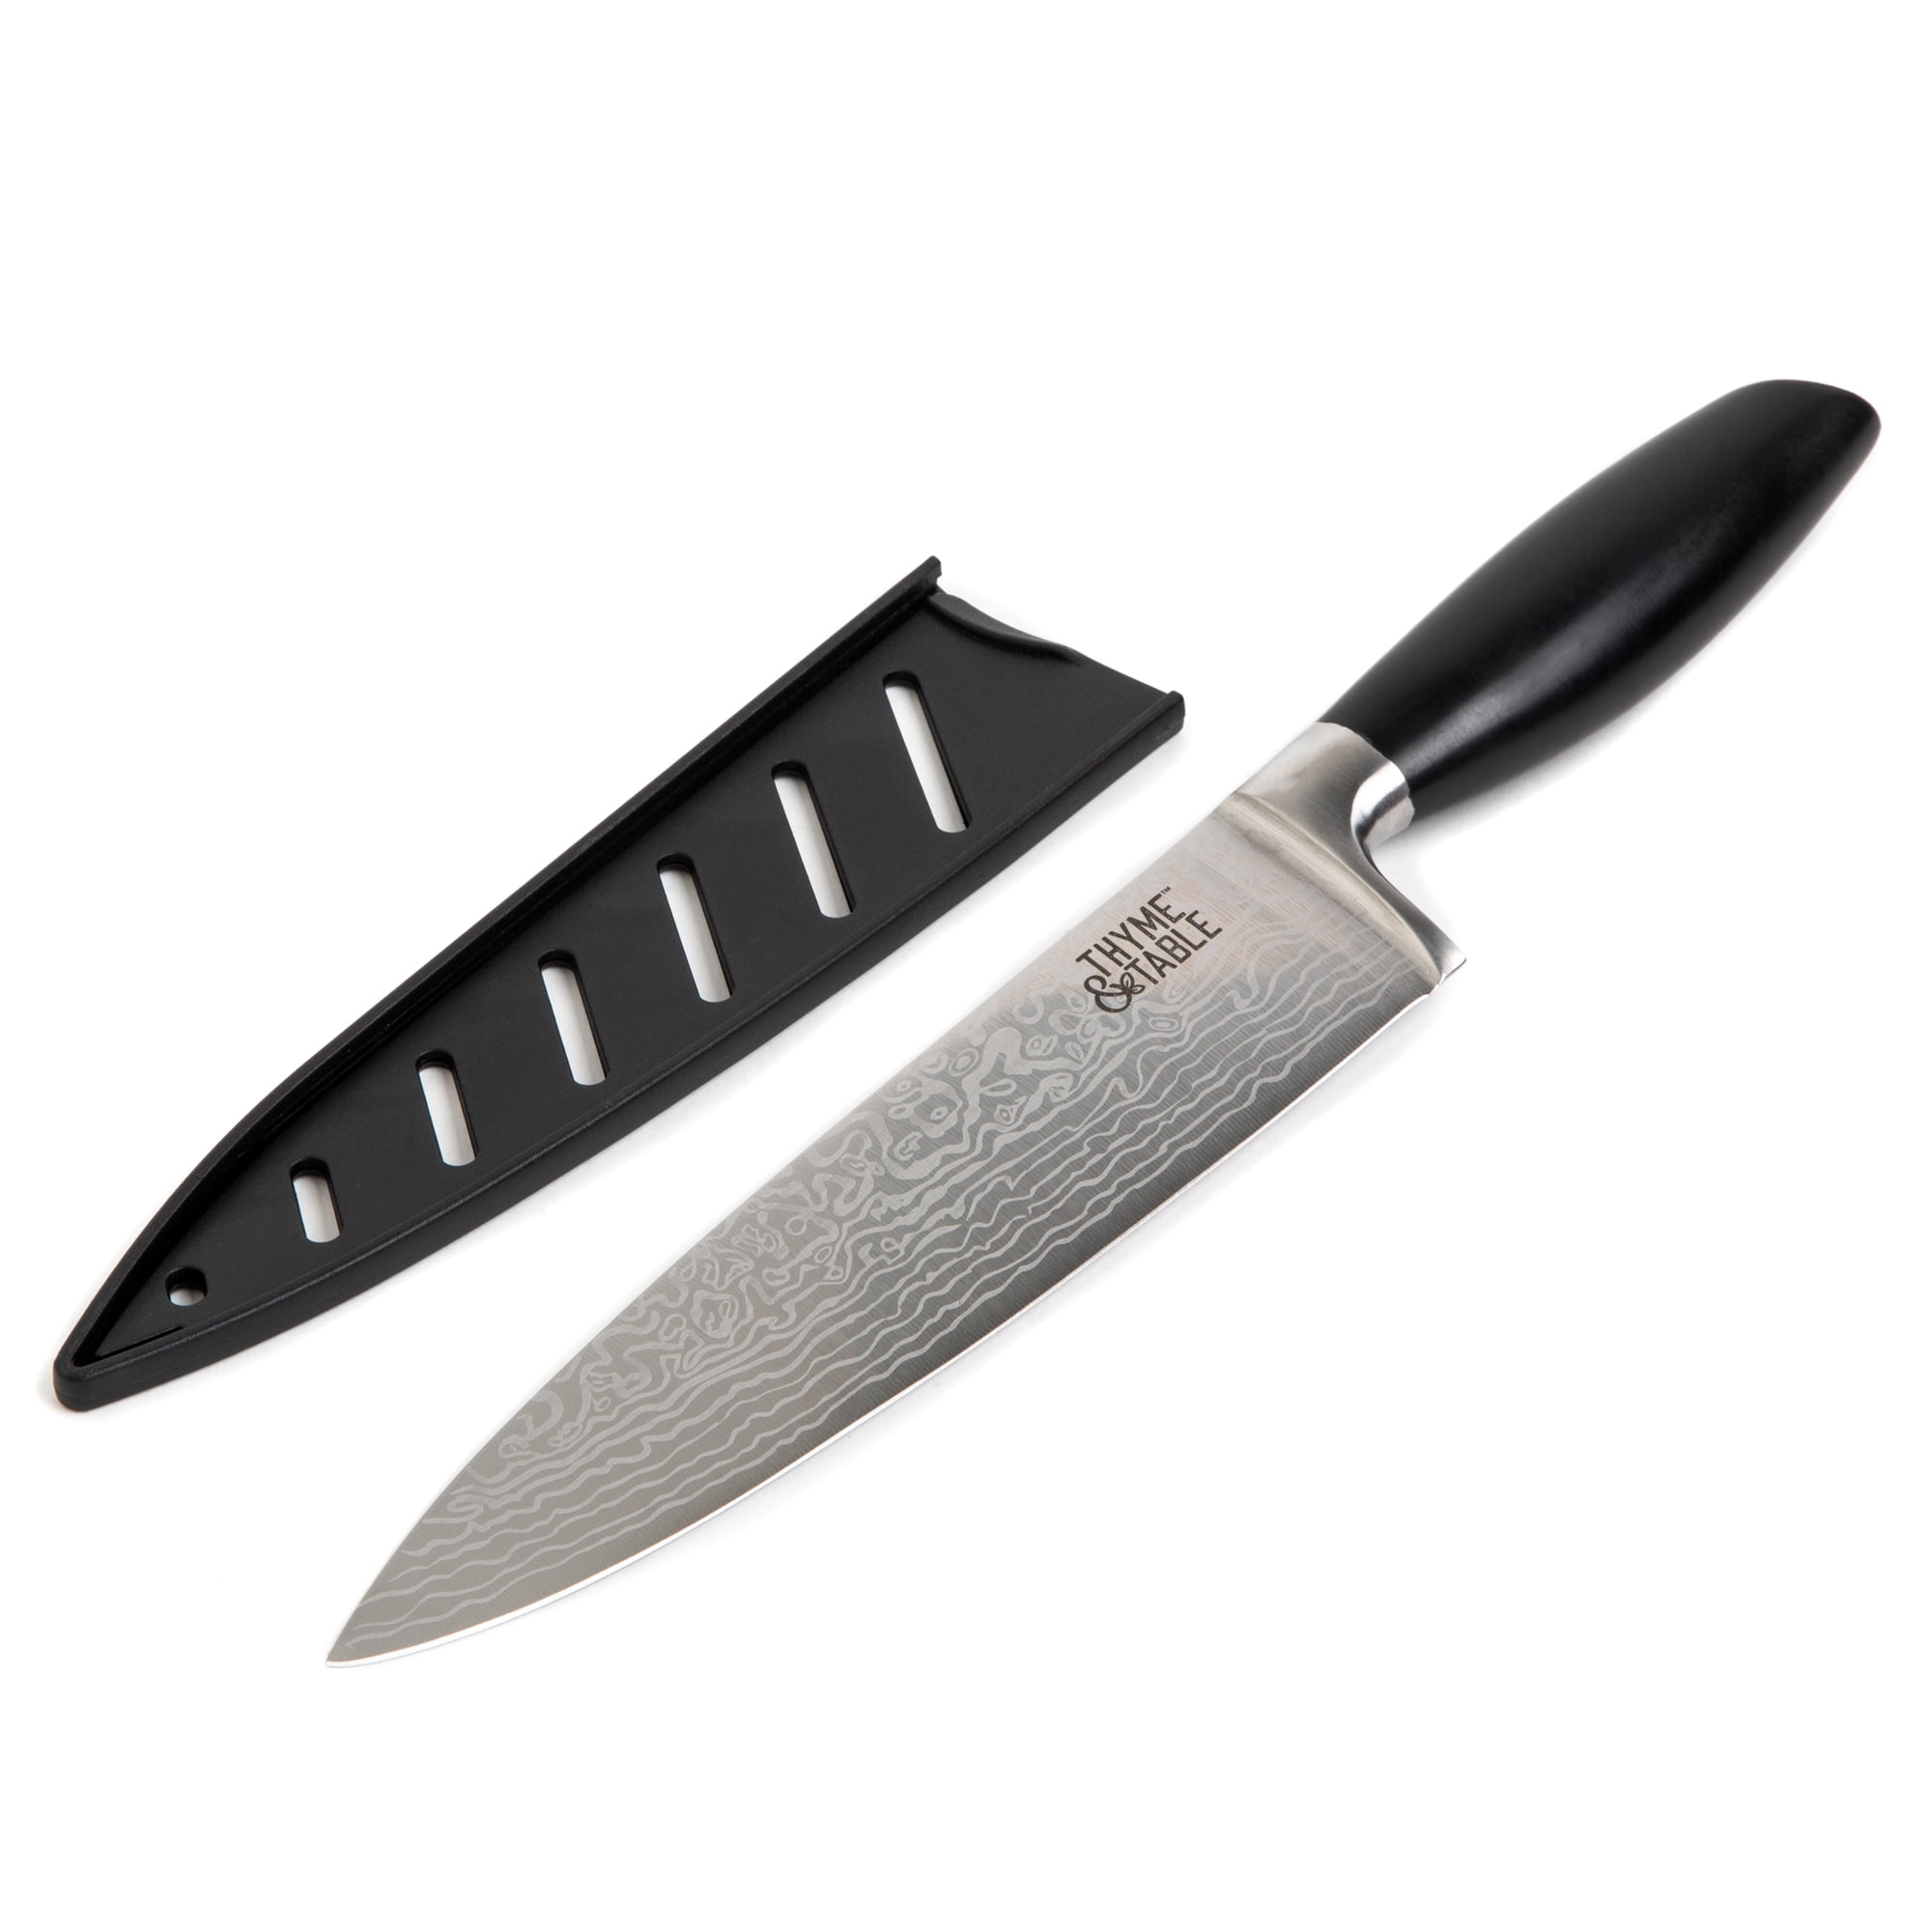 Thyme and Table Knife Vs Tasty Steak Knife 